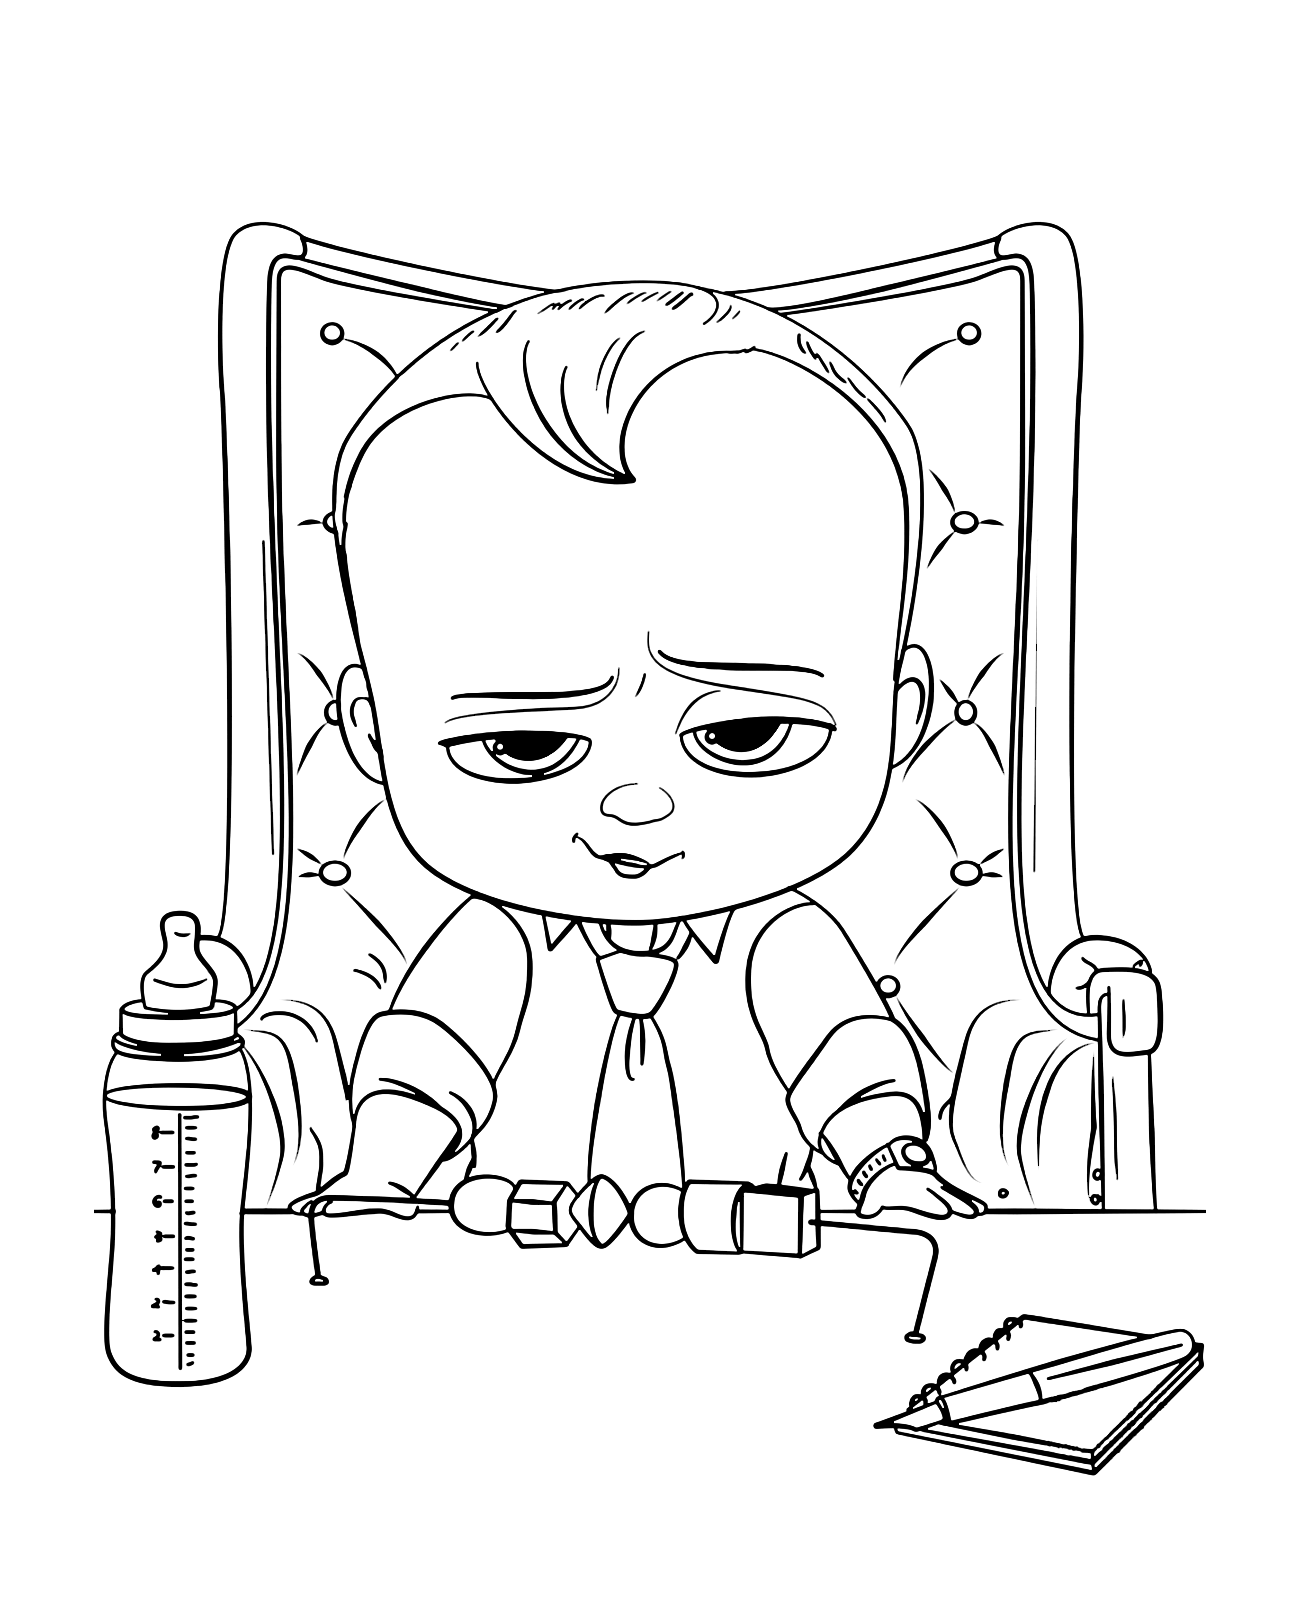 Baby Boss - Baby Boss seduto sulla sua poltrona da capo con il biberon pronto